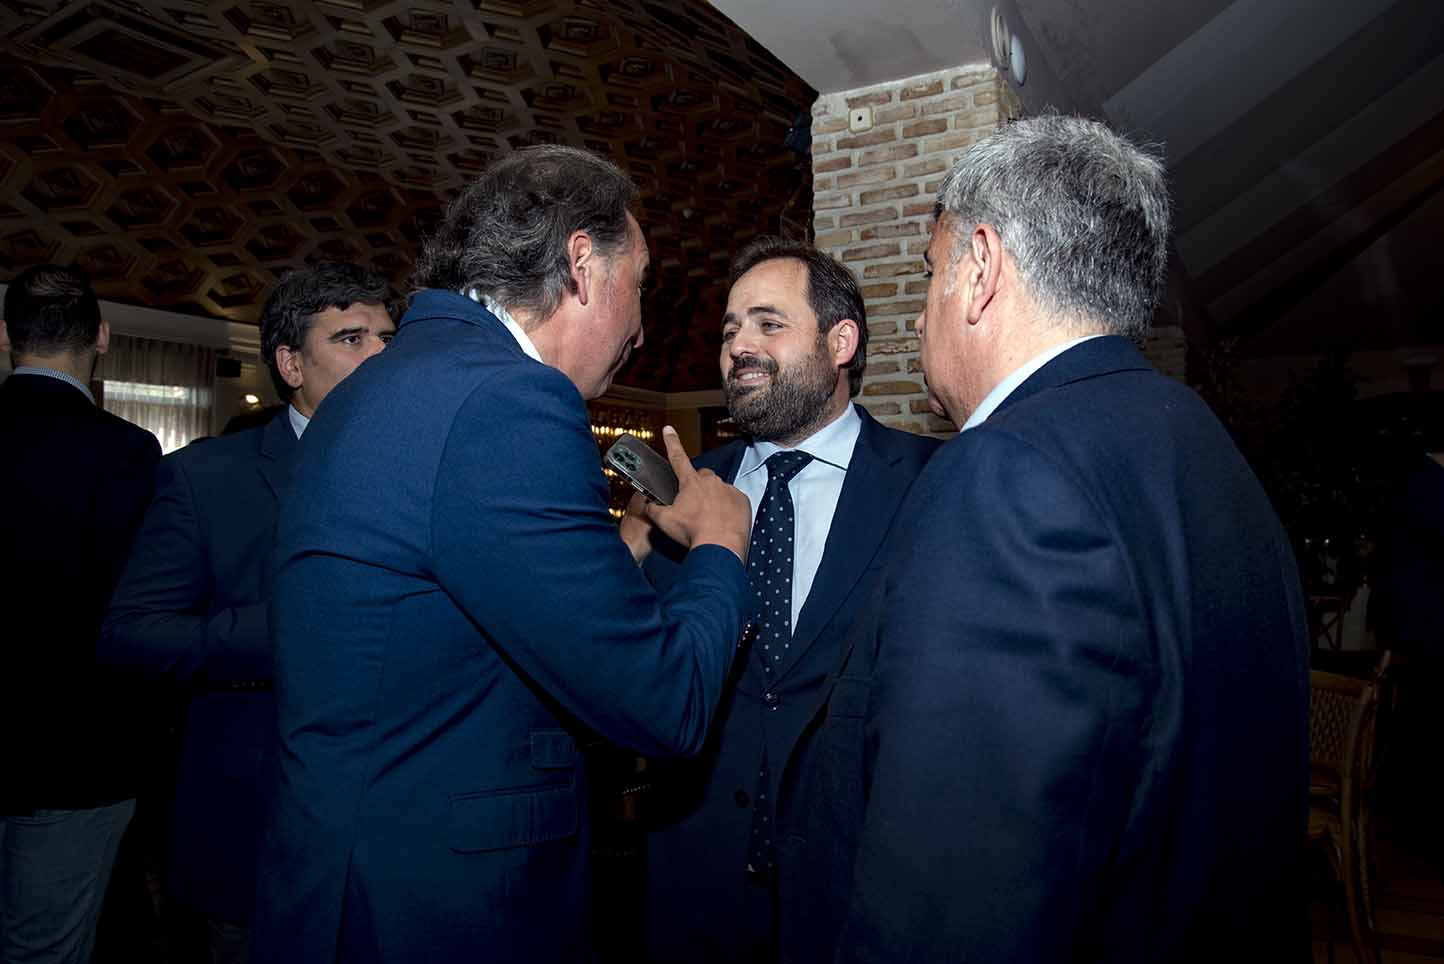 El presidente del PP de Castilla-La Mancha, Paco Núñez, conversando con compañeros de partido en "Espacio Reservado", de encastillalamancha.es. Foto: Rebeca Arango.